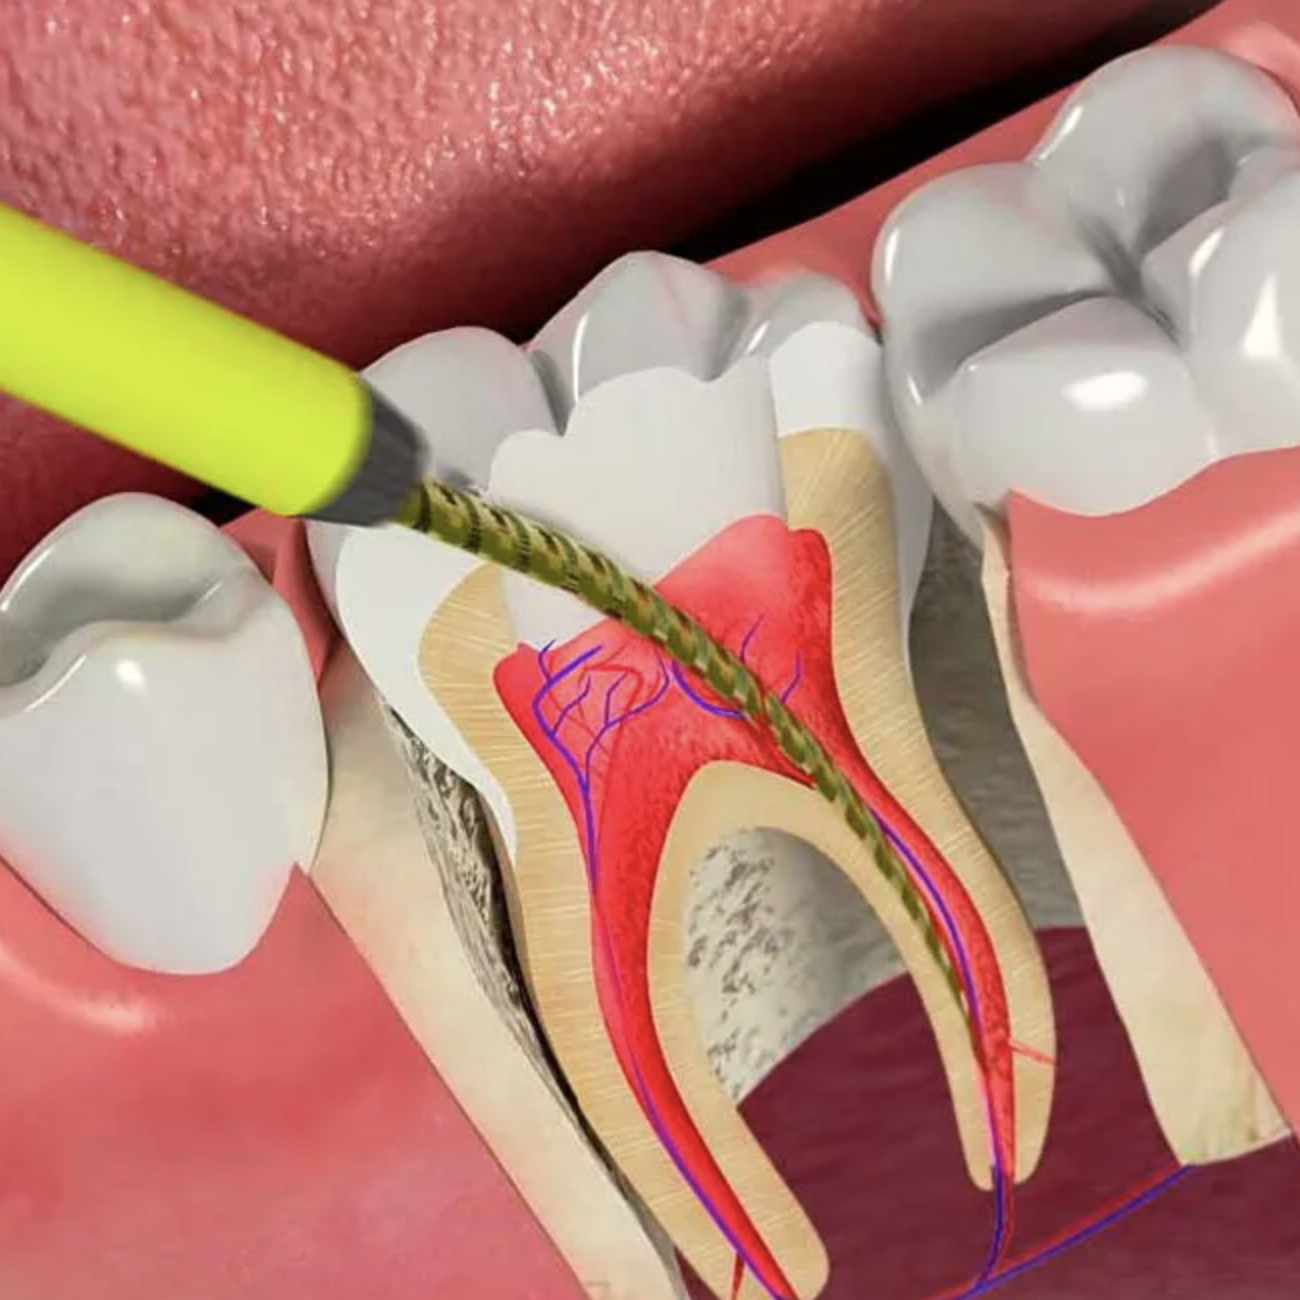 Временное лечение каналов зуба. Эндодонтия в стоматологии.